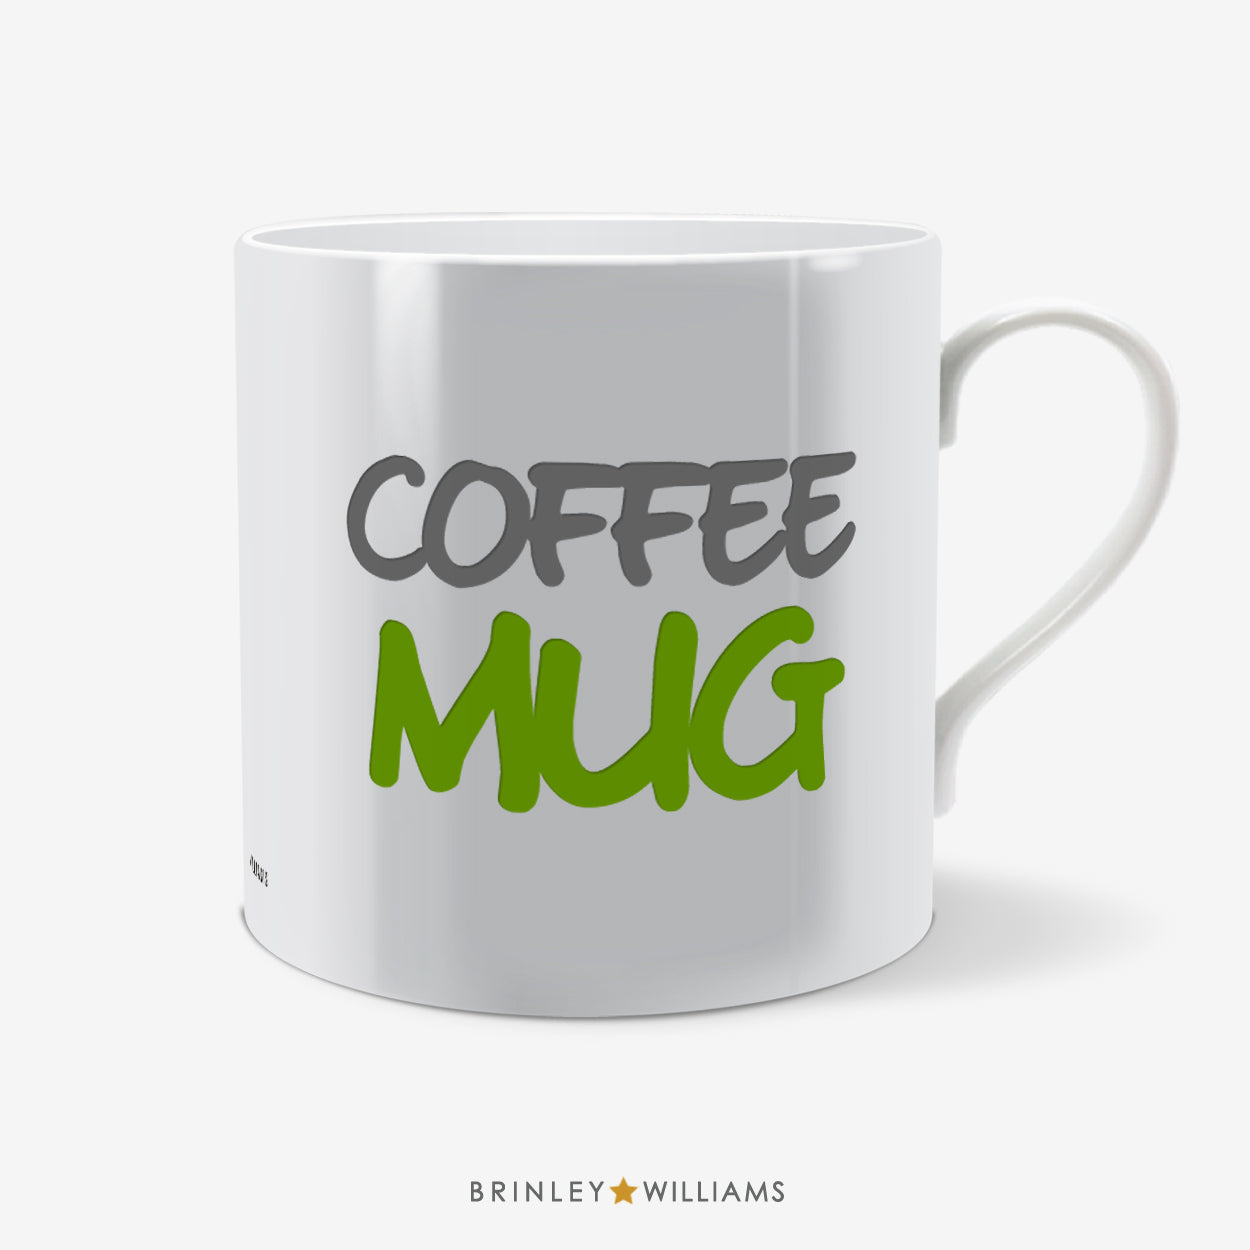 Coffee Mug Fun Mug - Green